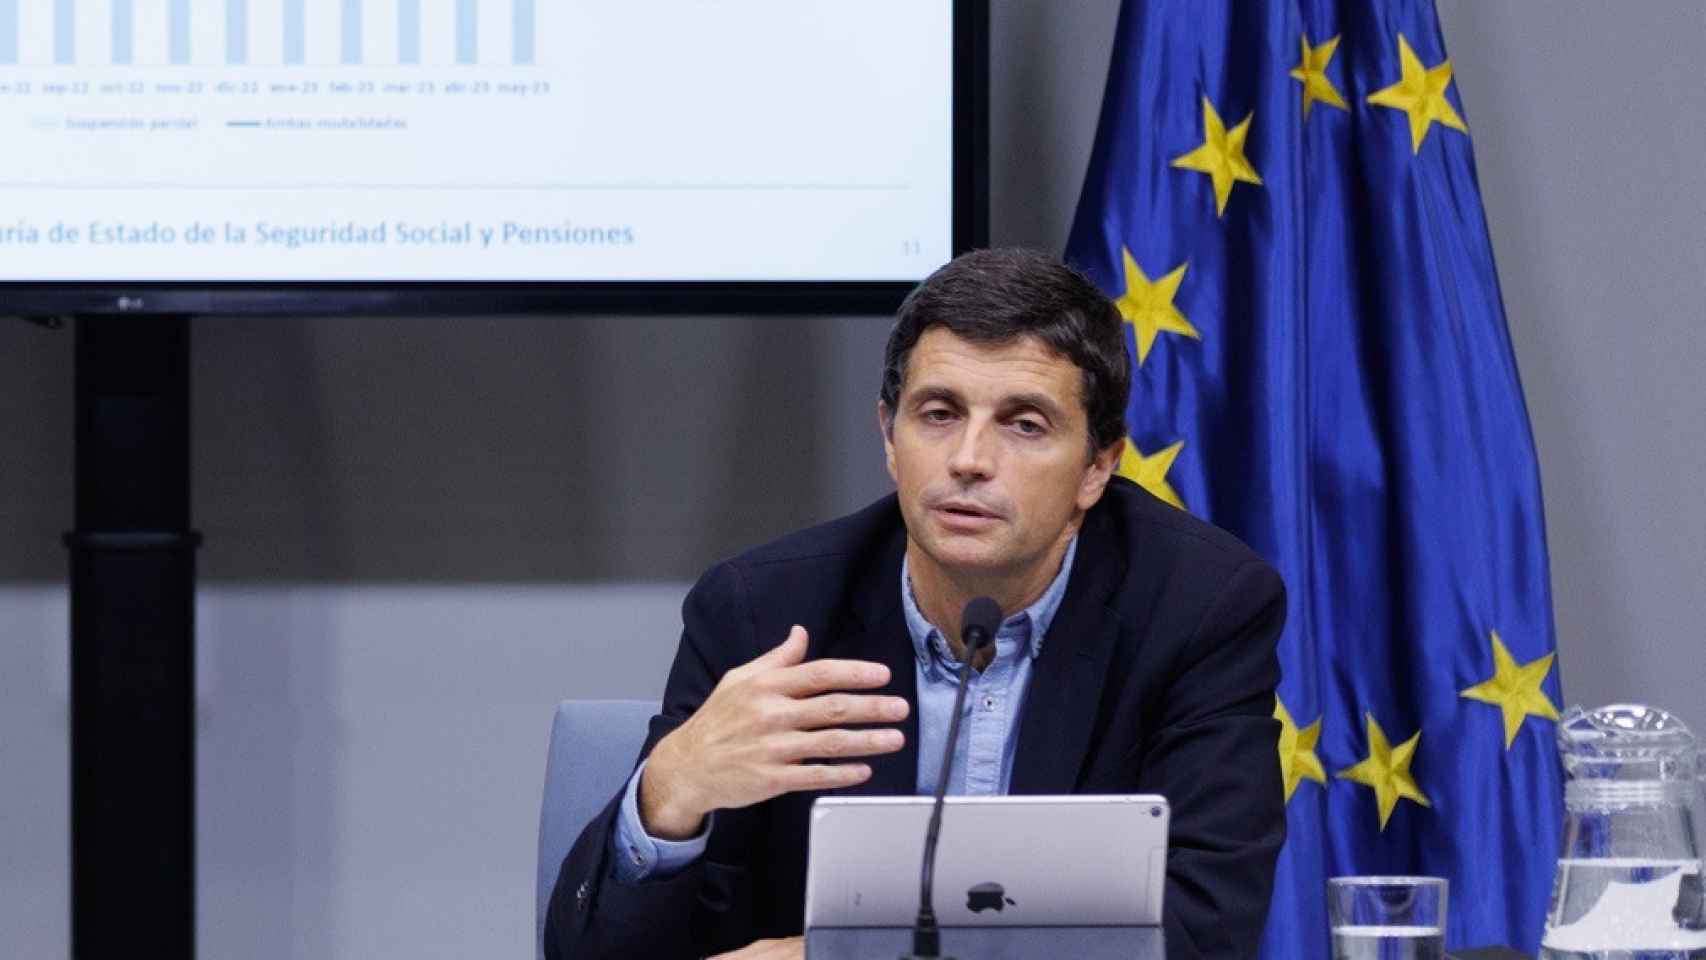 El secretario de Estado de Seguridad Social y Pensiones, Borja Suárez.